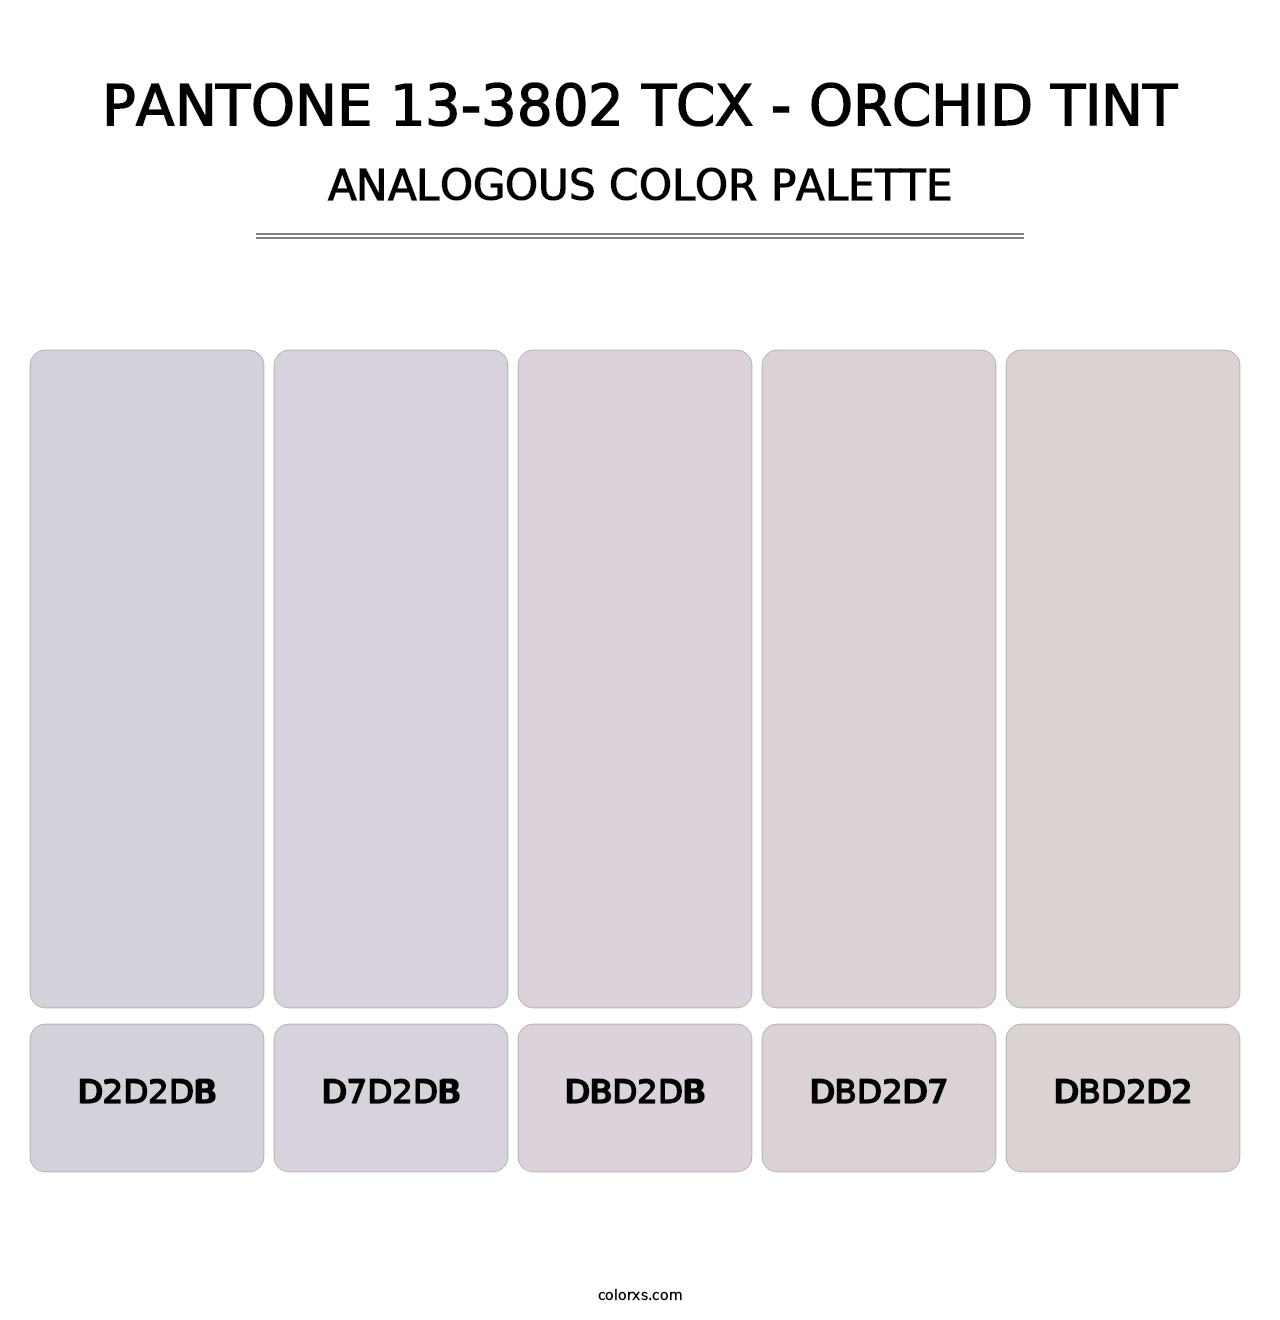 PANTONE 13-3802 TCX - Orchid Tint - Analogous Color Palette